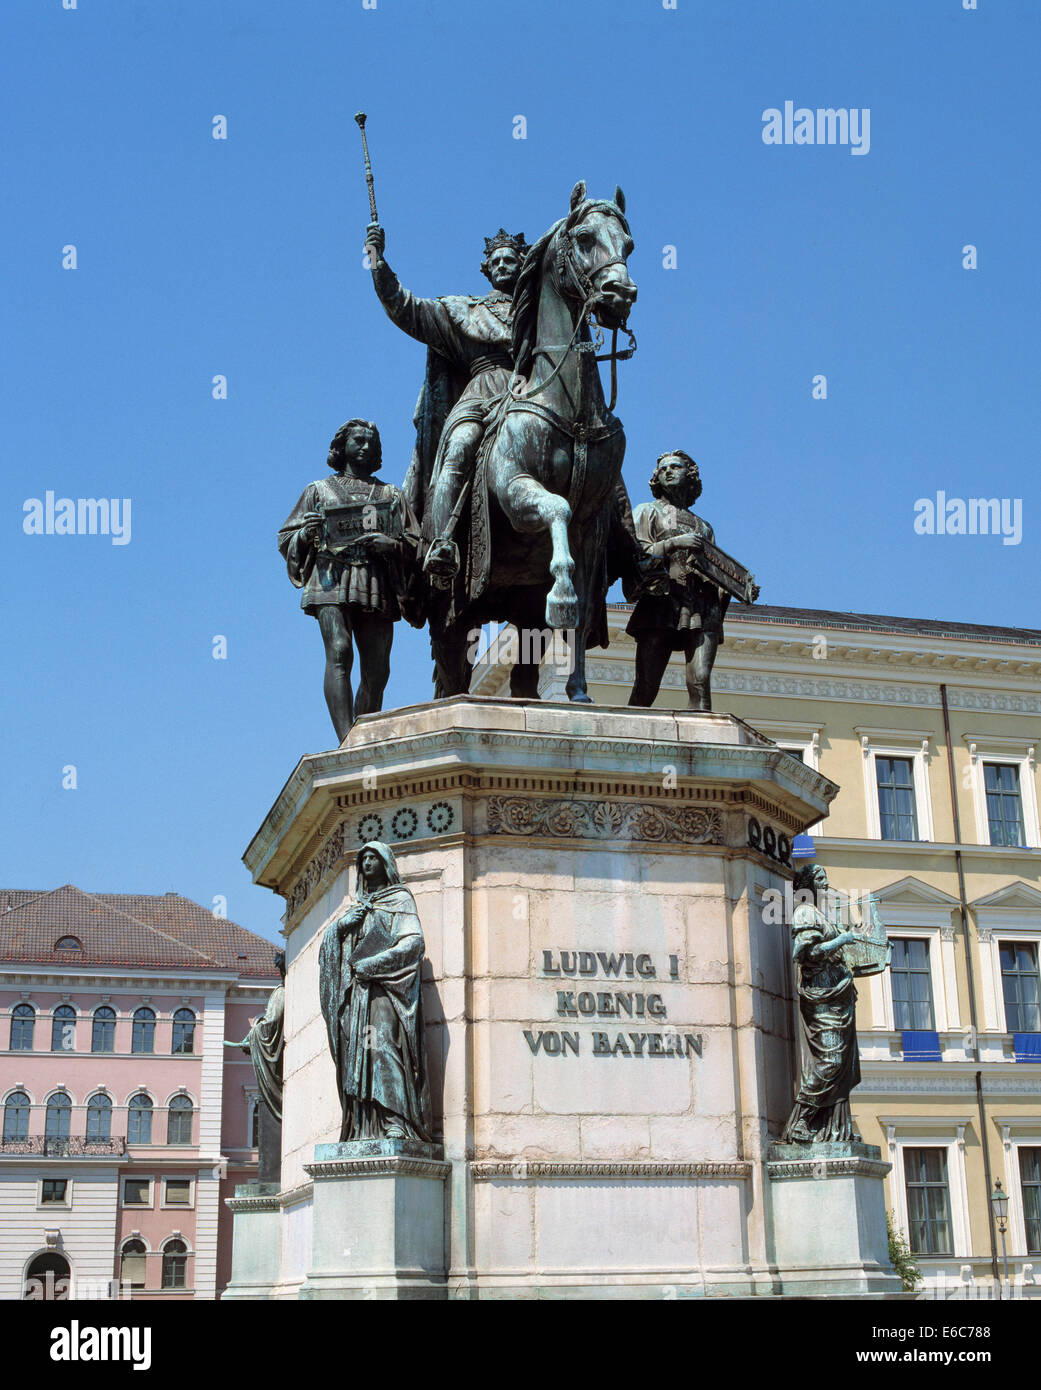 Reiterdenkmal Koenig Ludwig I. von Bayern von Ludwig Schwanthaler, Max von Widnmann und Ferdinand von Miller, Odeonsplatz und Ludwigstrasse in Muenche Stock Photo